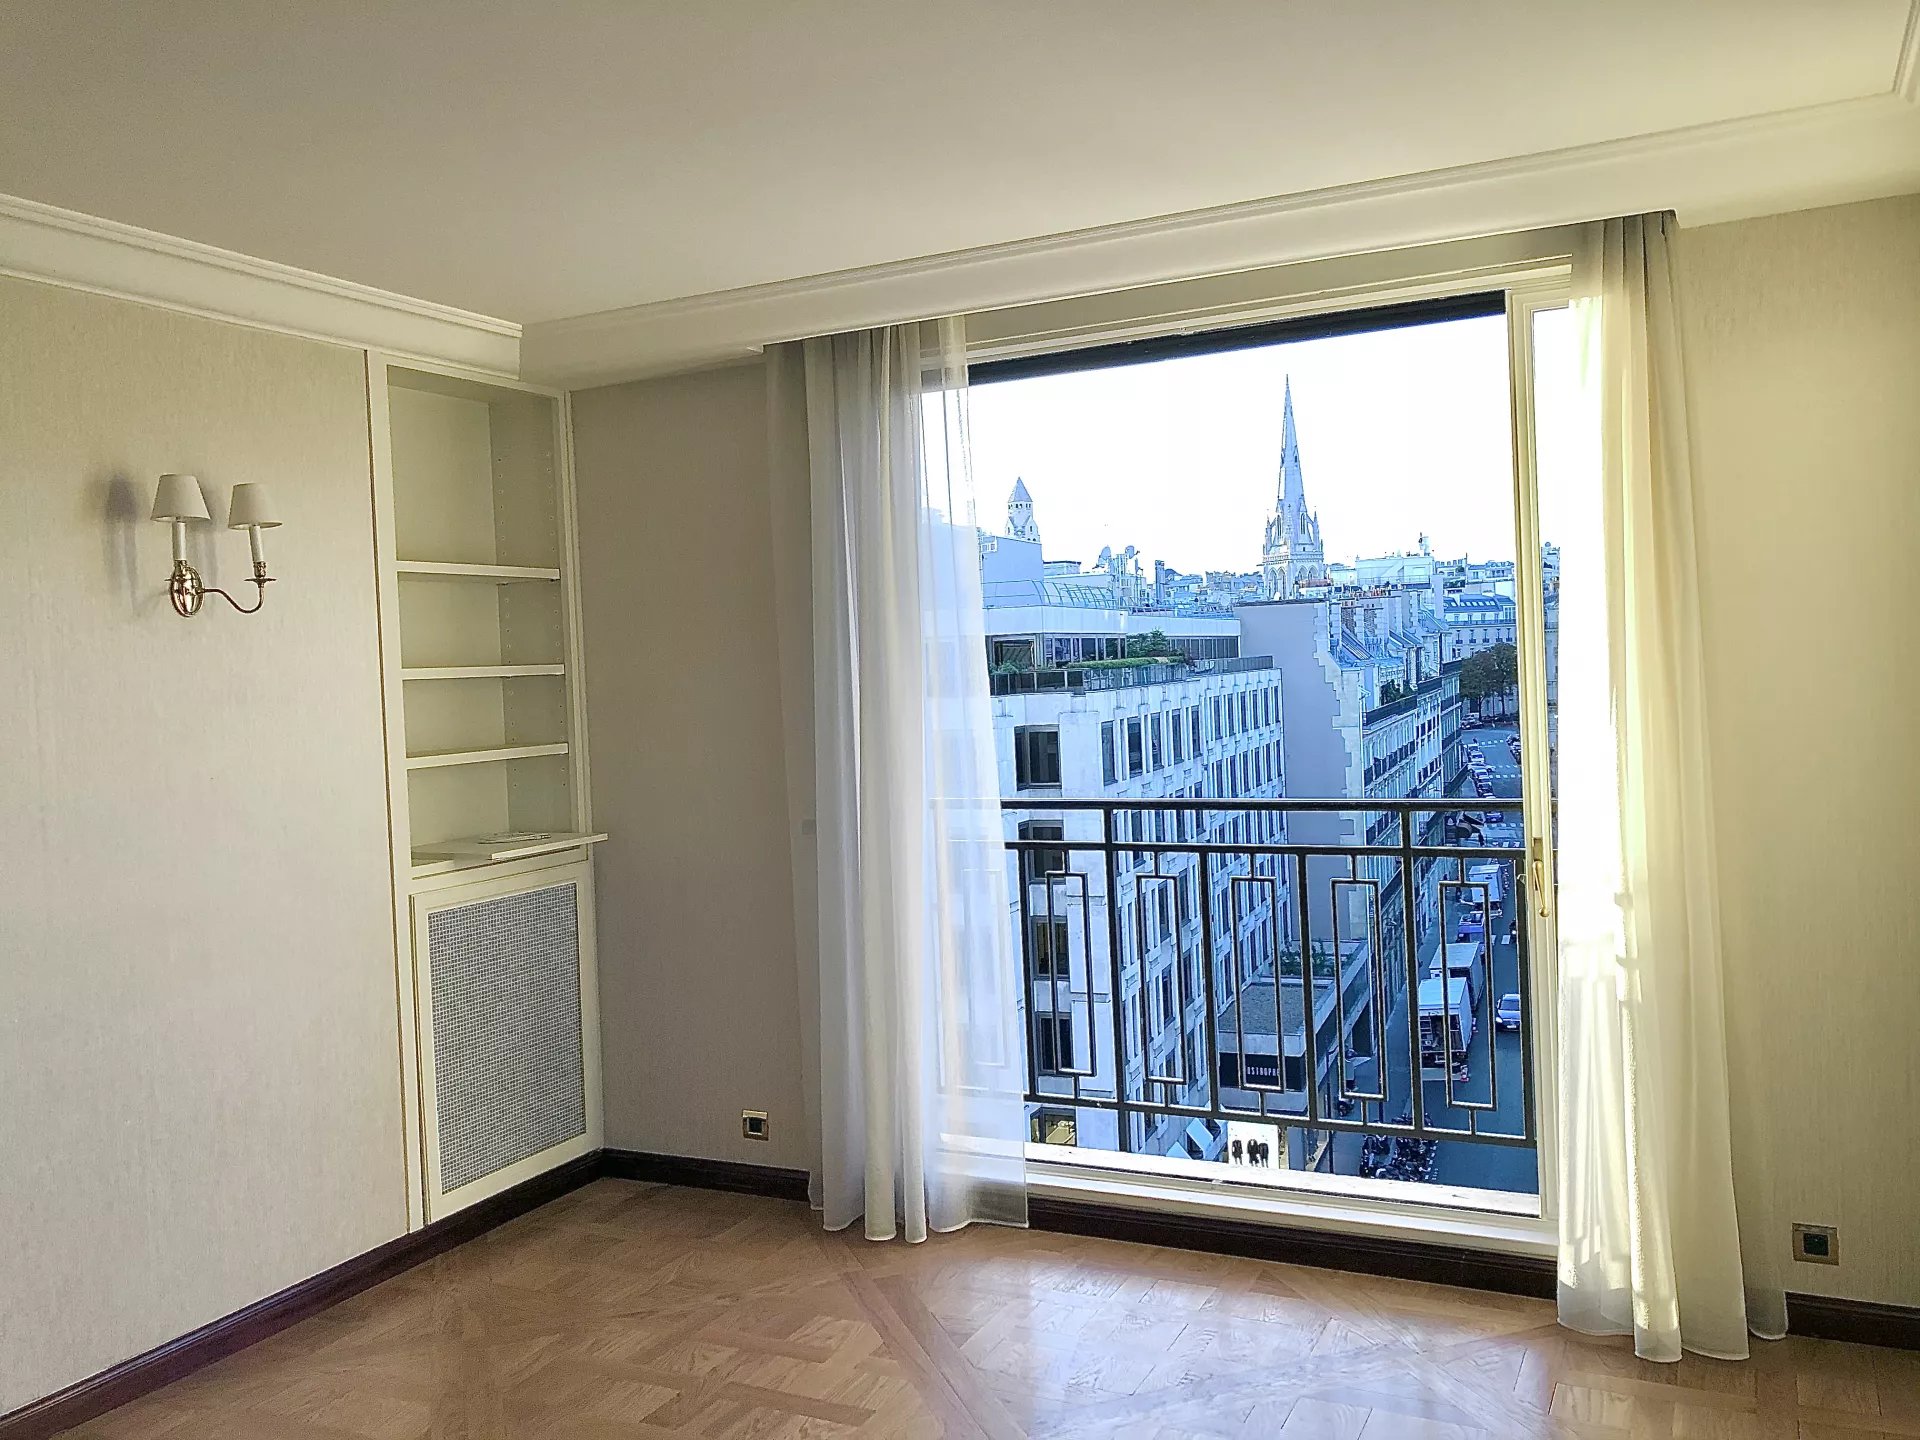 Sale Apartment - Paris 8th (Paris 8ème) Champs-Élysées